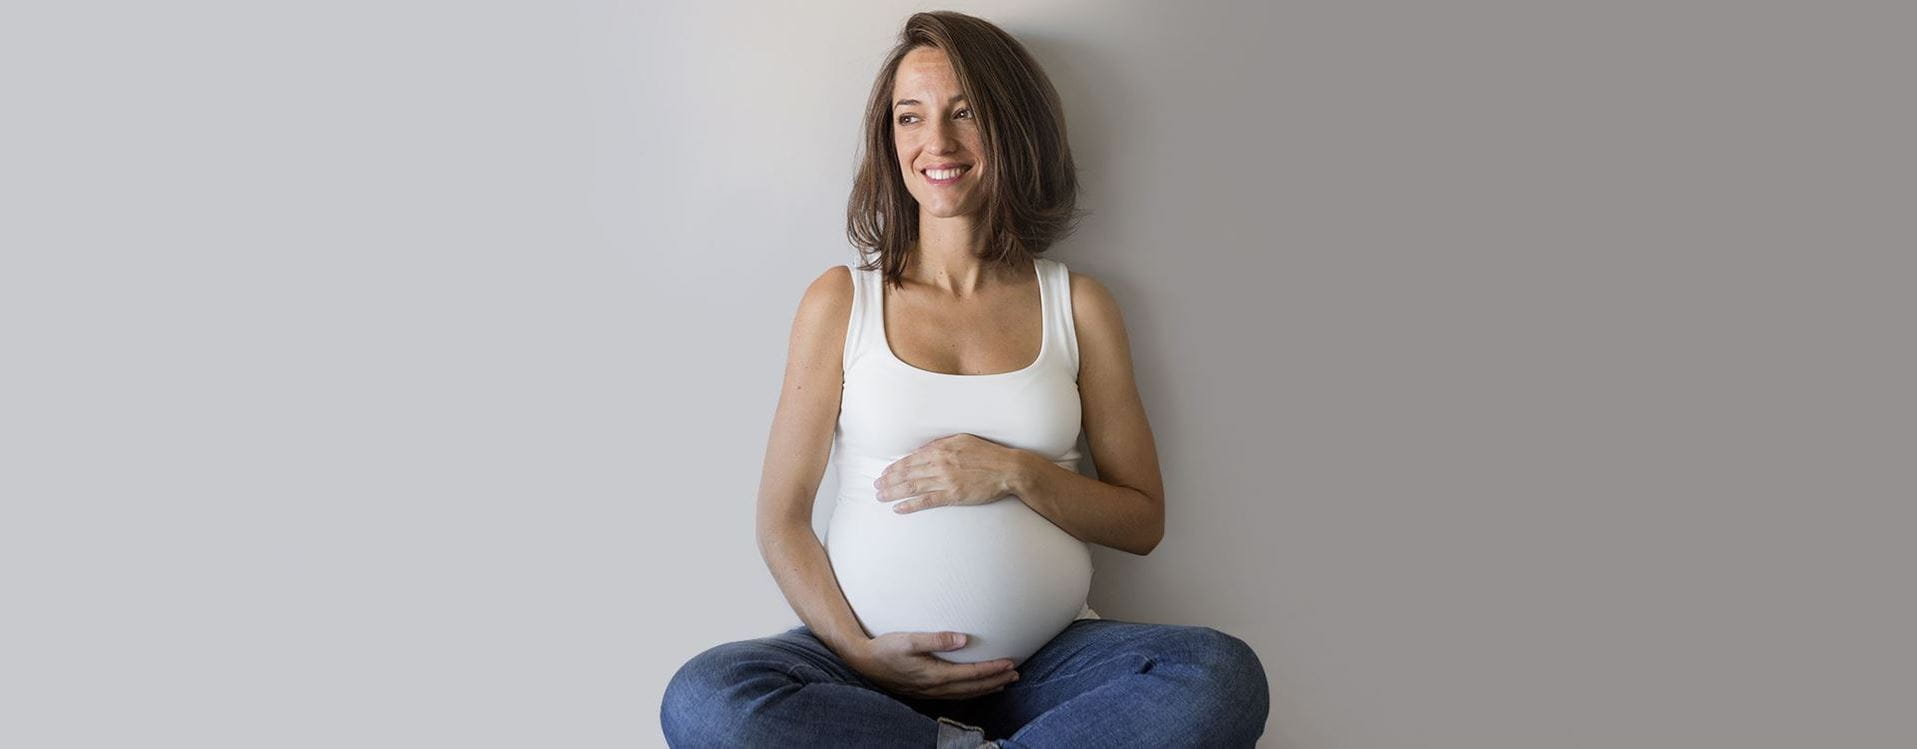 Yoga para embarazadas: ejercicios y consejos